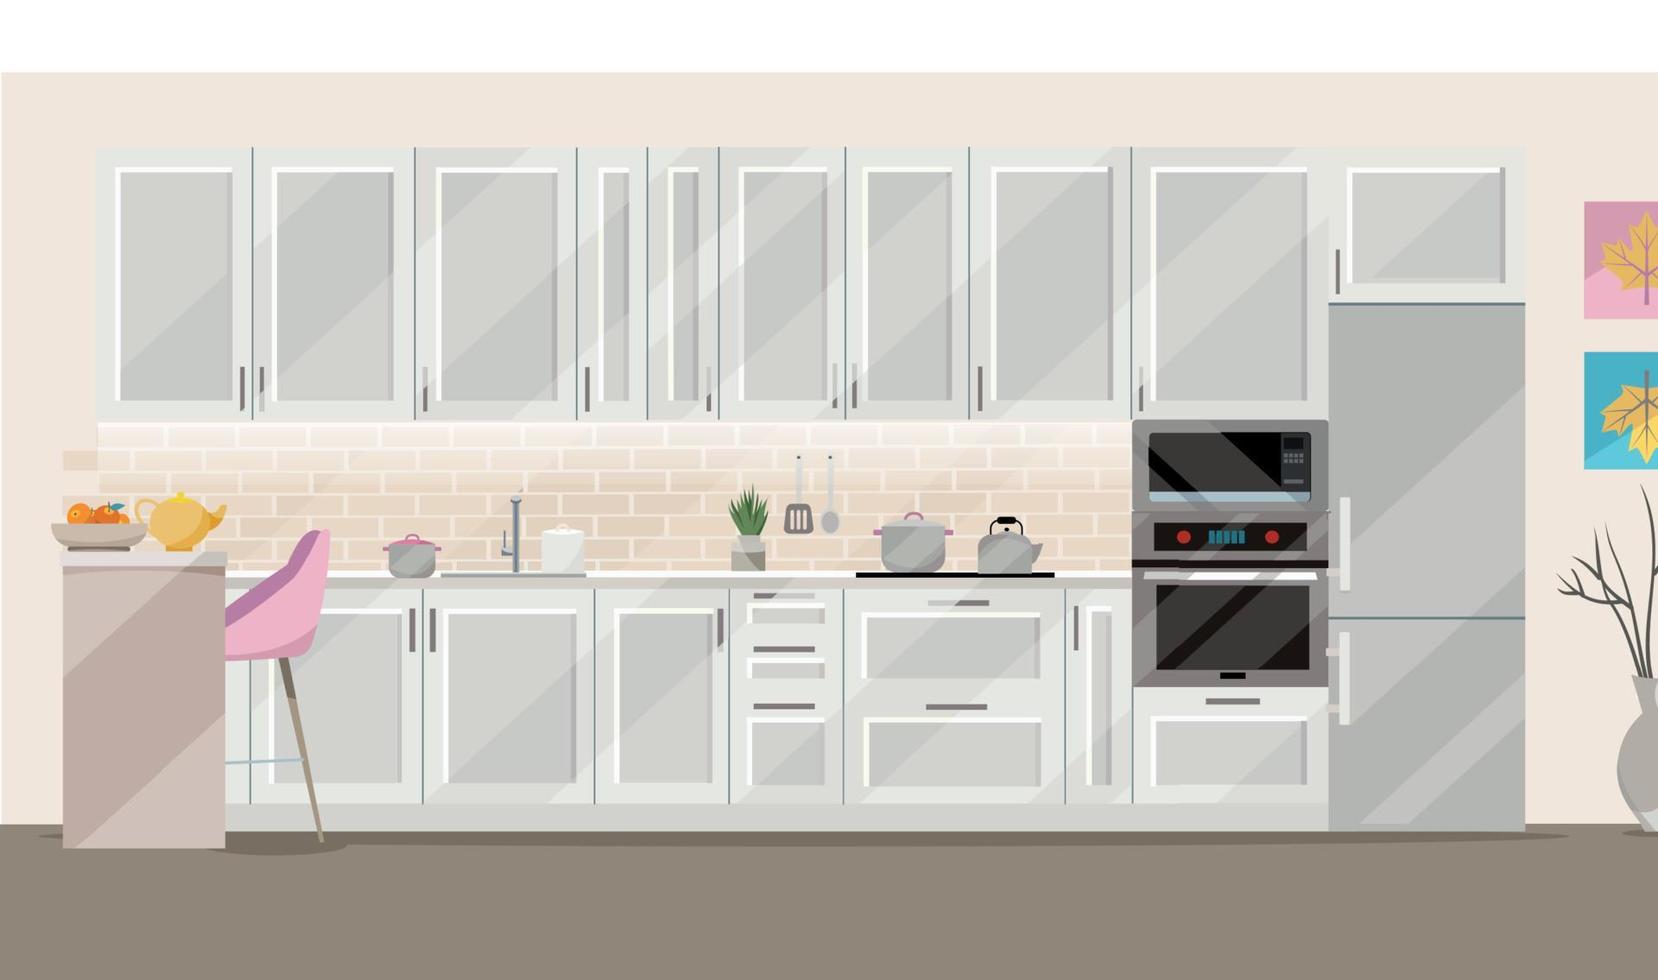 ilustración plana cocina blanca sobre fondo beige con accesorios de cocina - nevera, horno, microondas. mesa de comedor con 4 sillas junto a la ventana con cortinas transparentes, té, tetera. vector